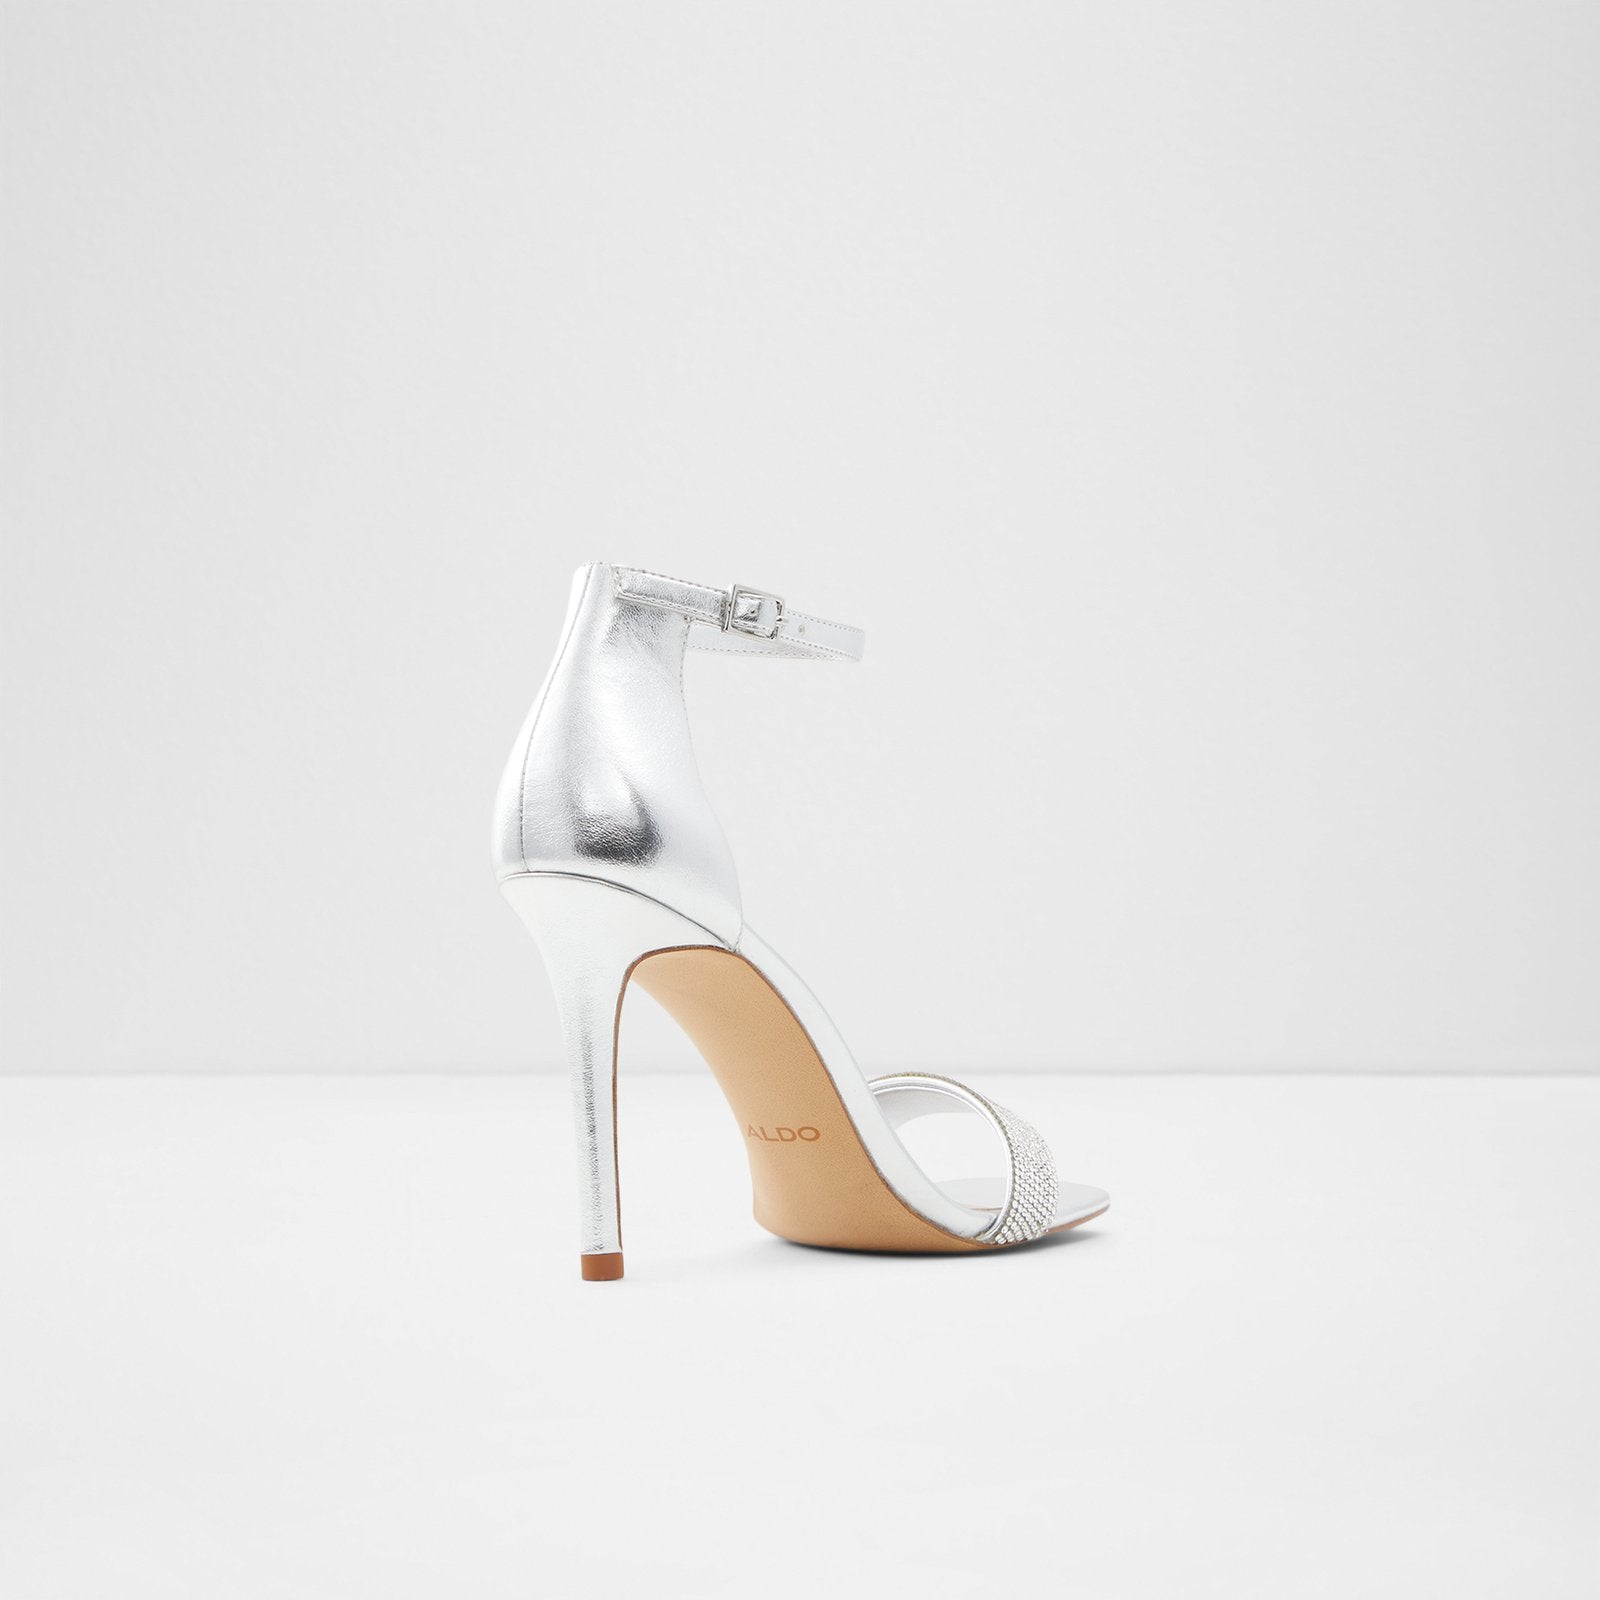 Afendaven Women Shoes - Silver - ALDO KSA